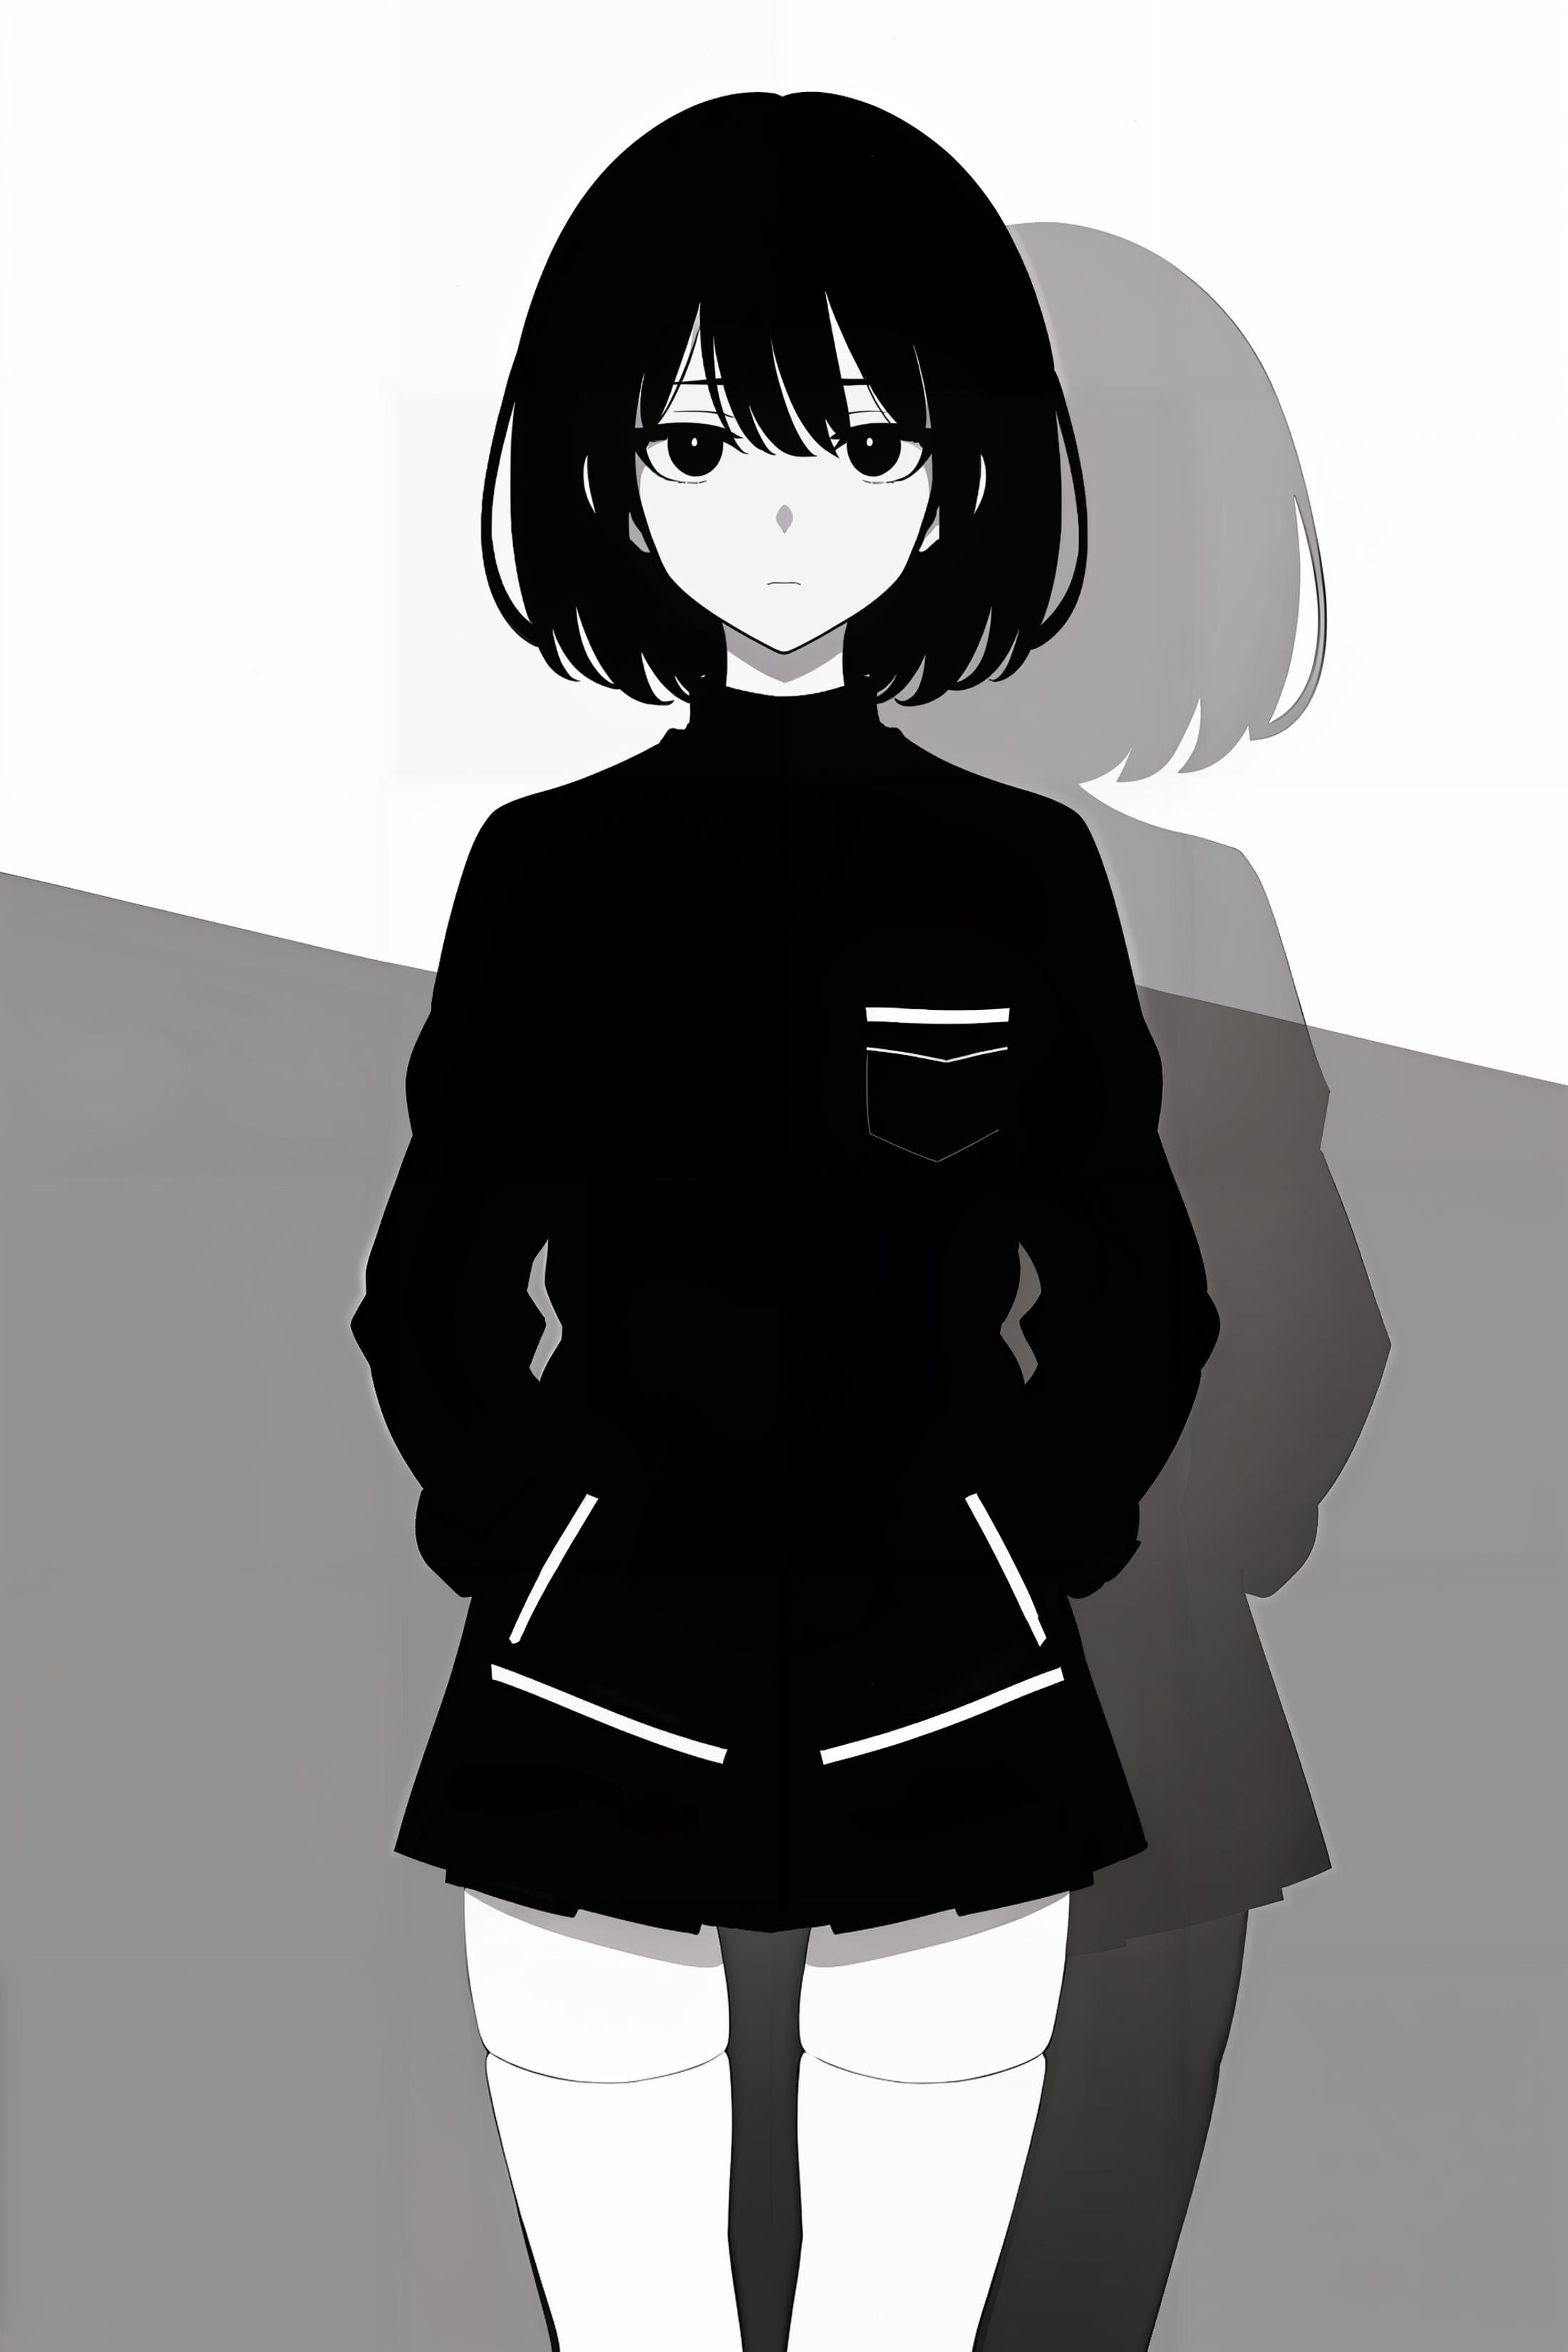 Minimalist Anime Style image by Rythievakem